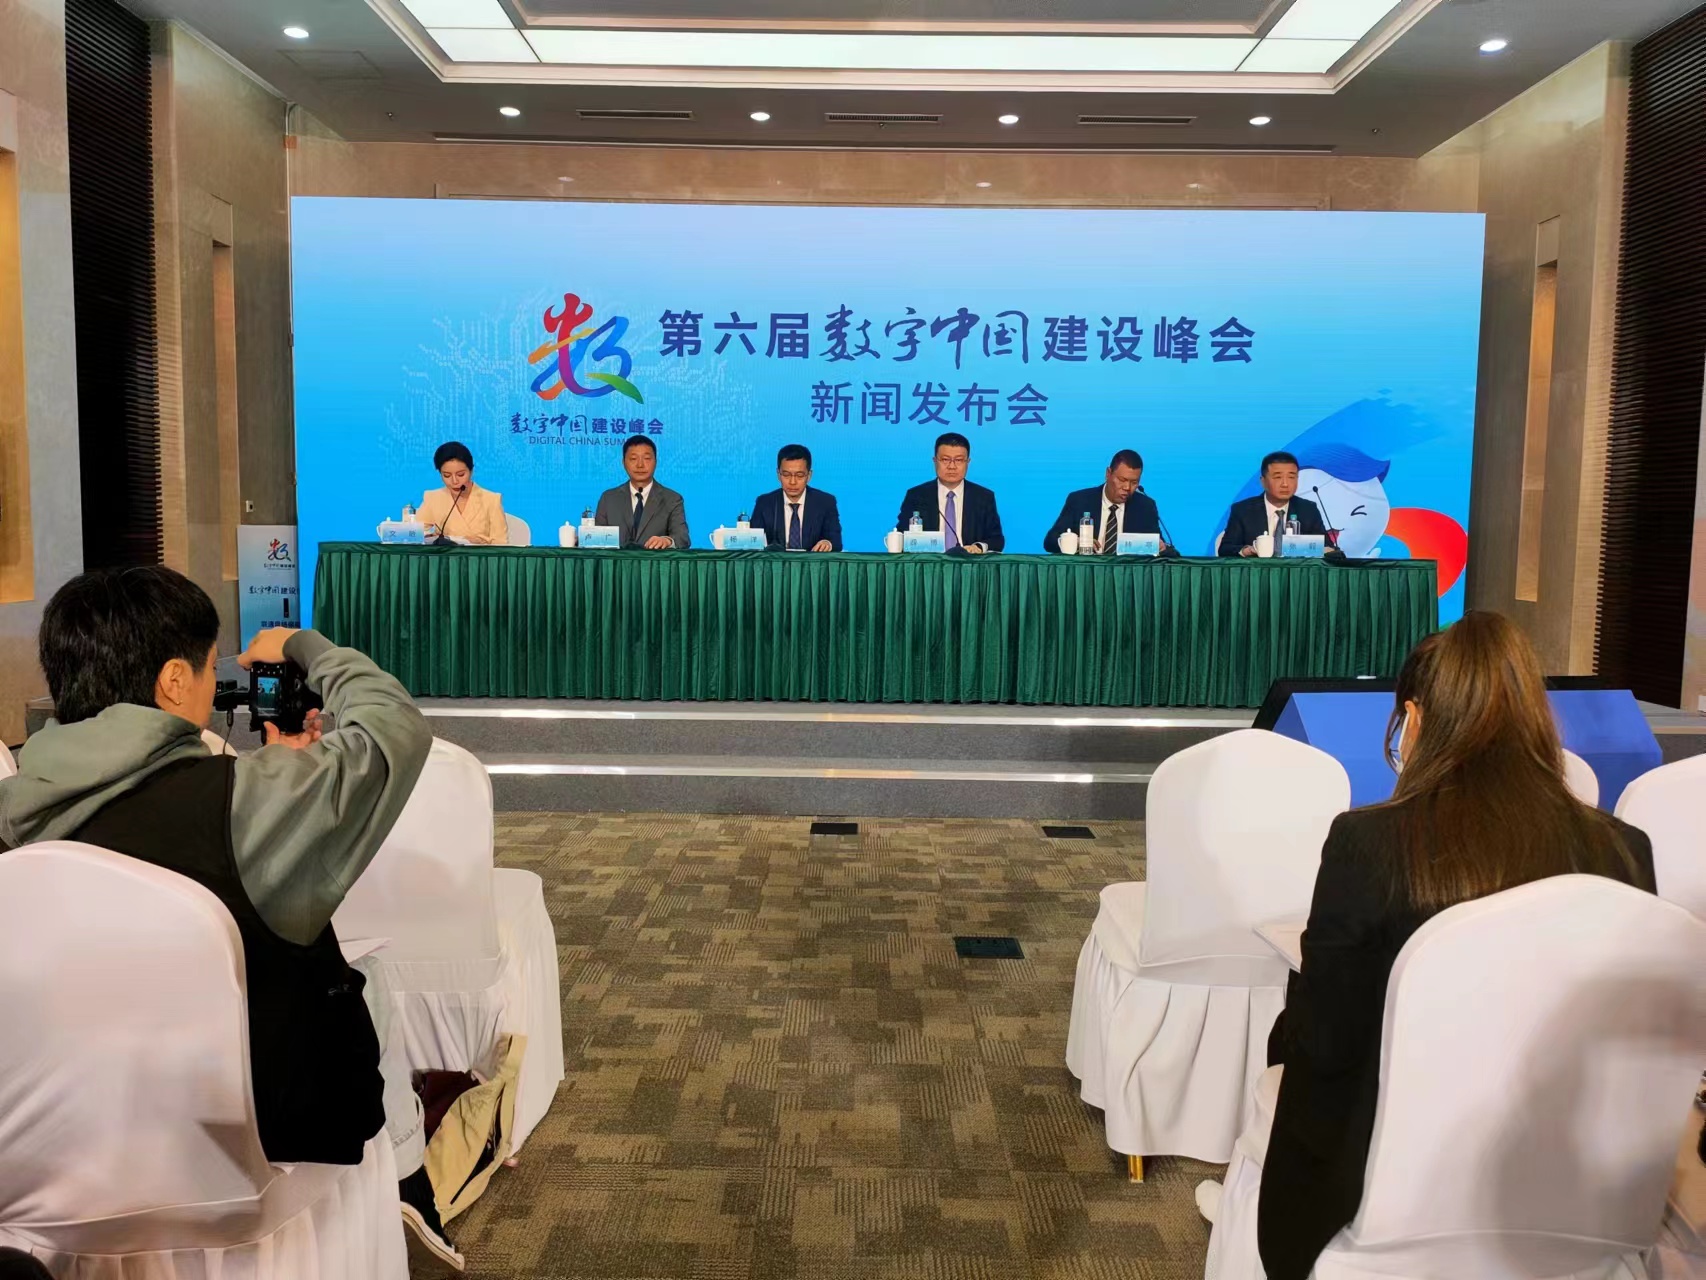 第六屆數字中國建設峰會期間福州將舉辦三場生態大會